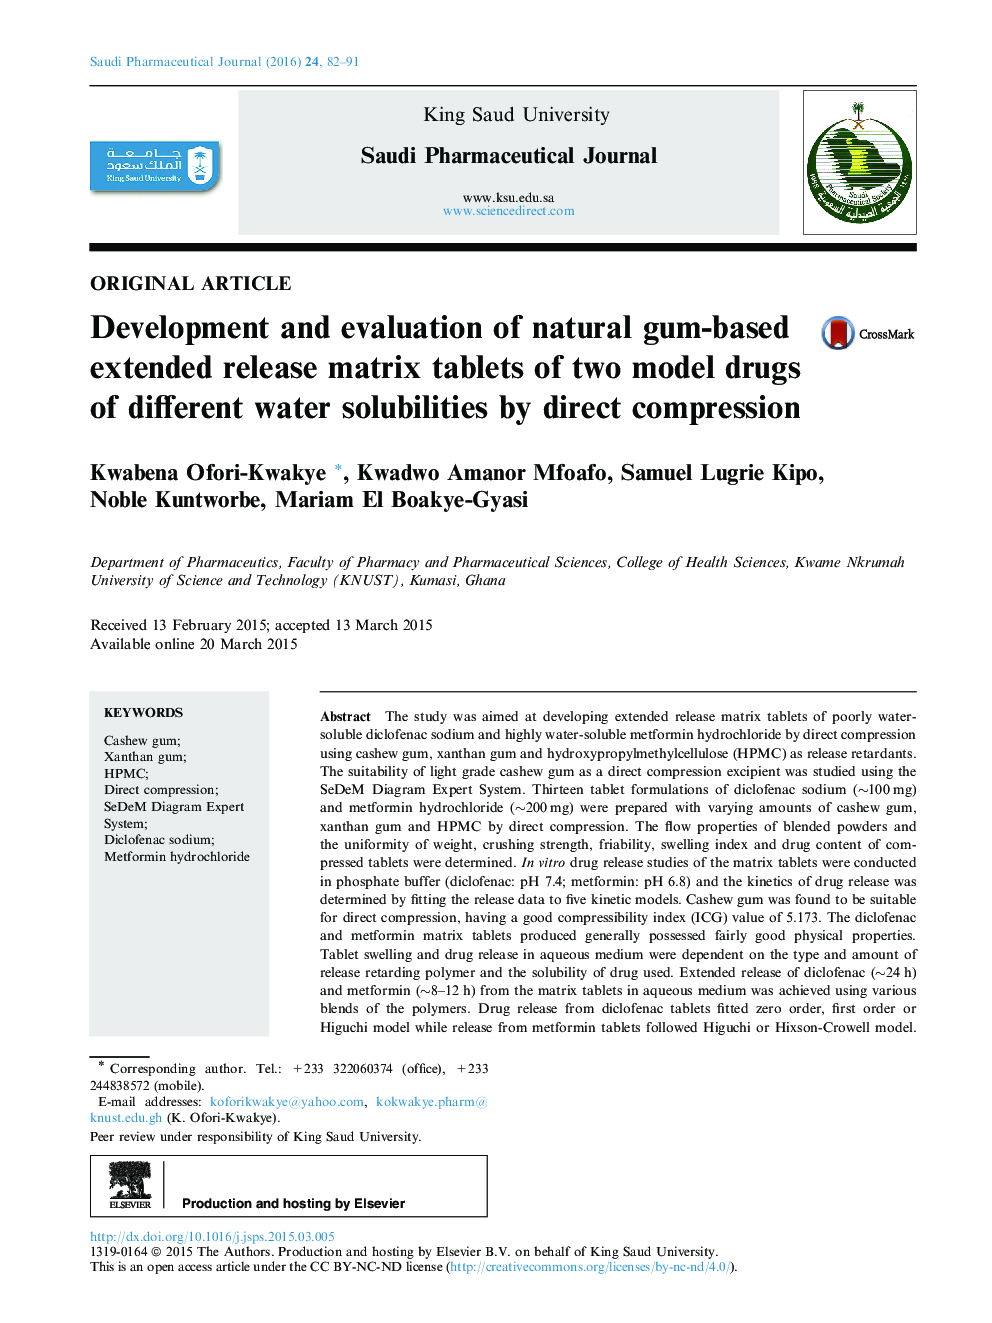 توسعه و ارزیابی قرص های ماتریس طولانی مدت آزمایشی مبتنی بر آدامس دو نوع داروهای مختلف حلالیت آب با استفاده از فشرده سازی مستقیم 